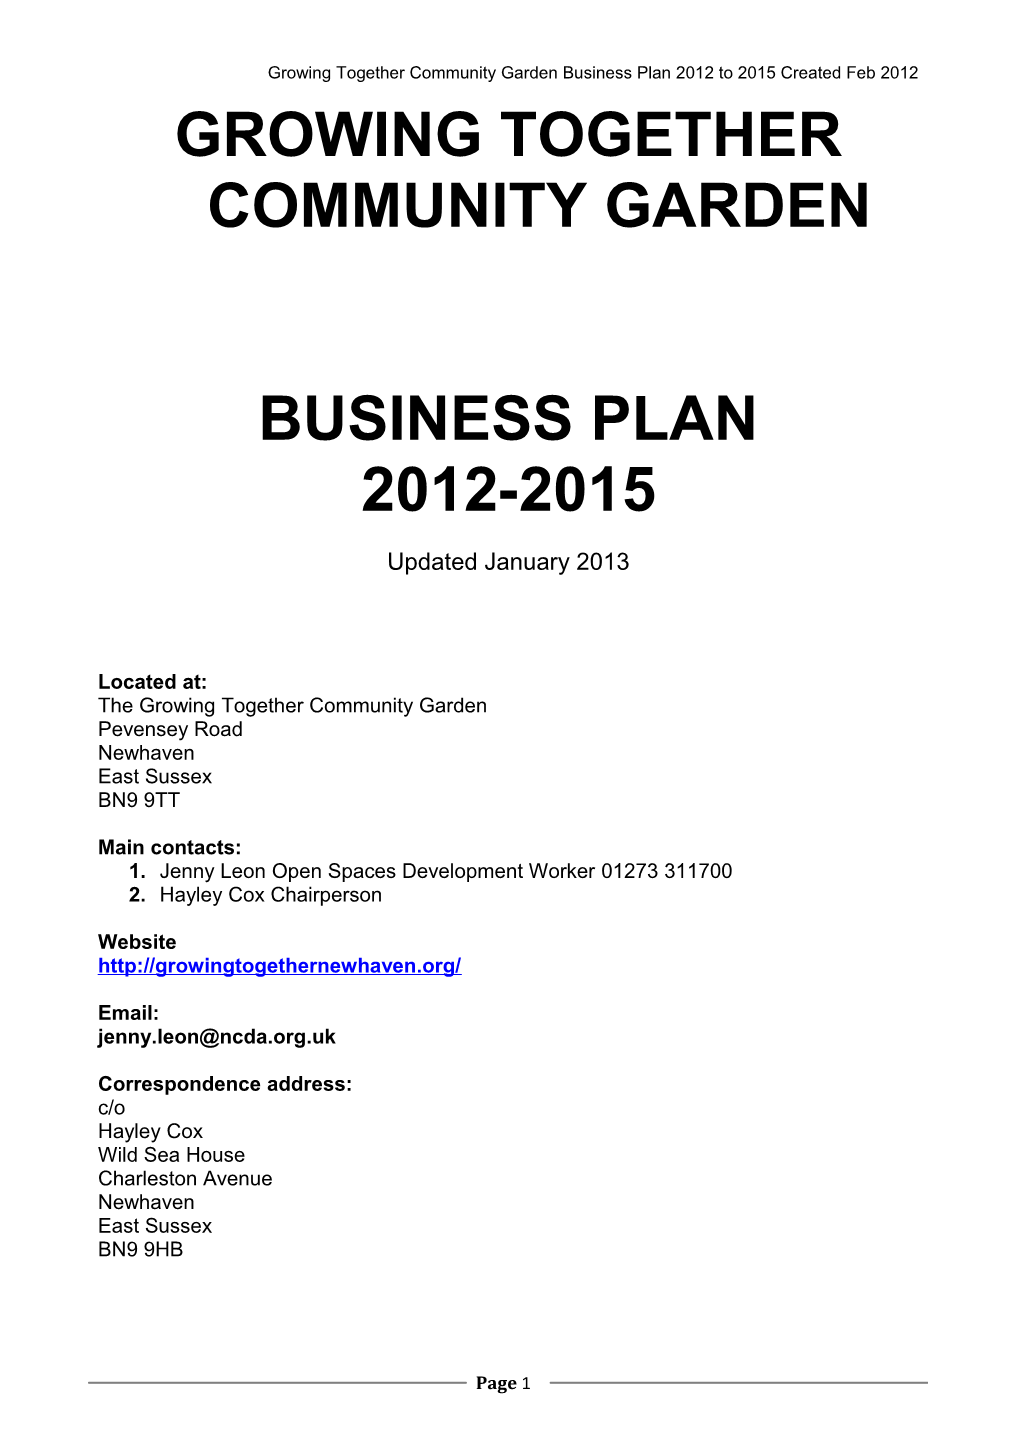 Culpeper Garden Business Plan 2009-2010